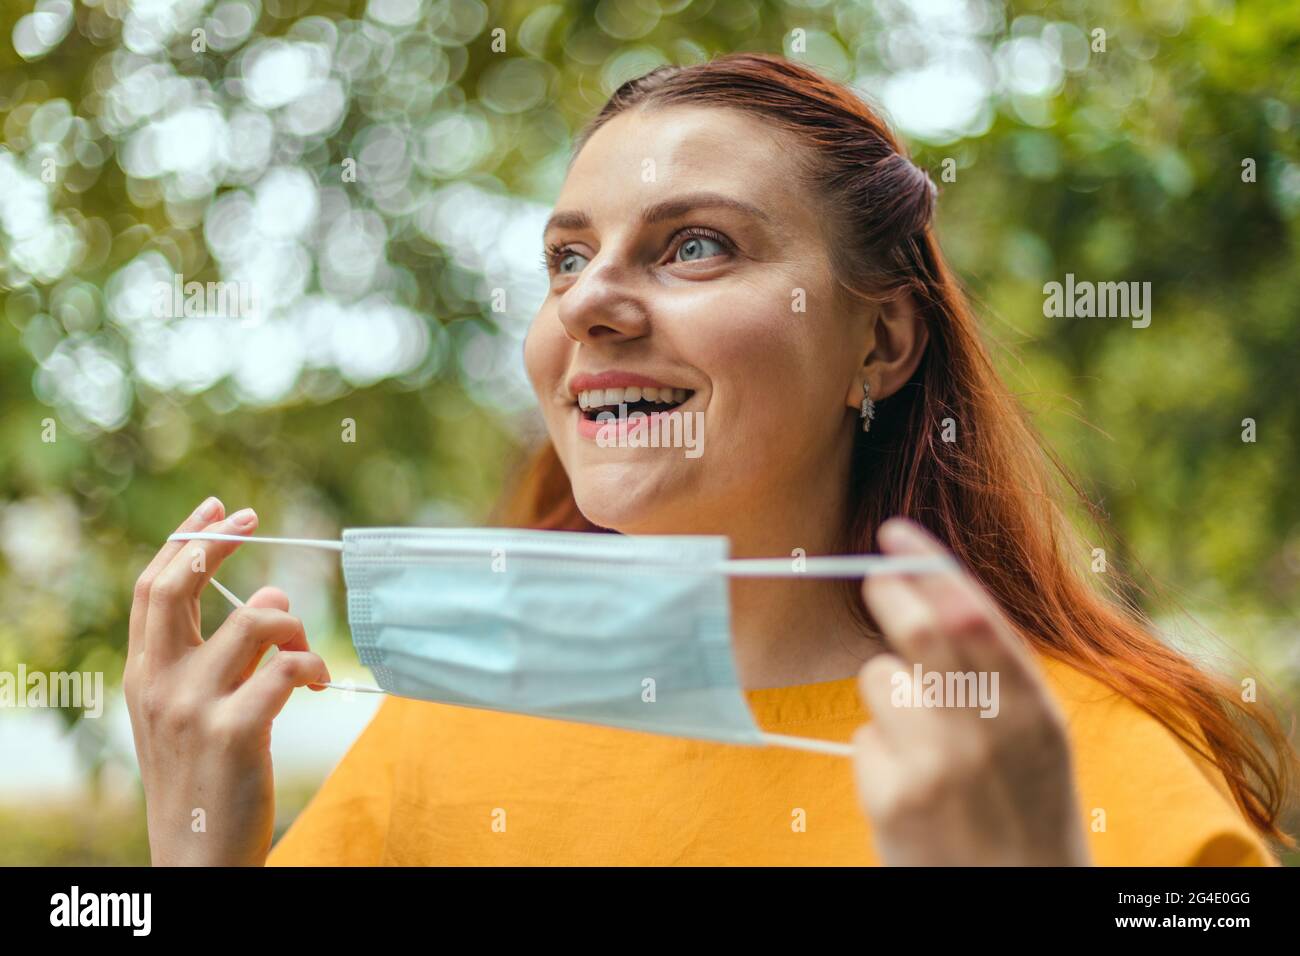 Glückliche Frau zieht ihre schützende medizinische Maske aus ihrem Gesicht  und genießt die Natur und die frische Luft nach dem Ende der  Coronavirus-Pandemie Stockfotografie - Alamy